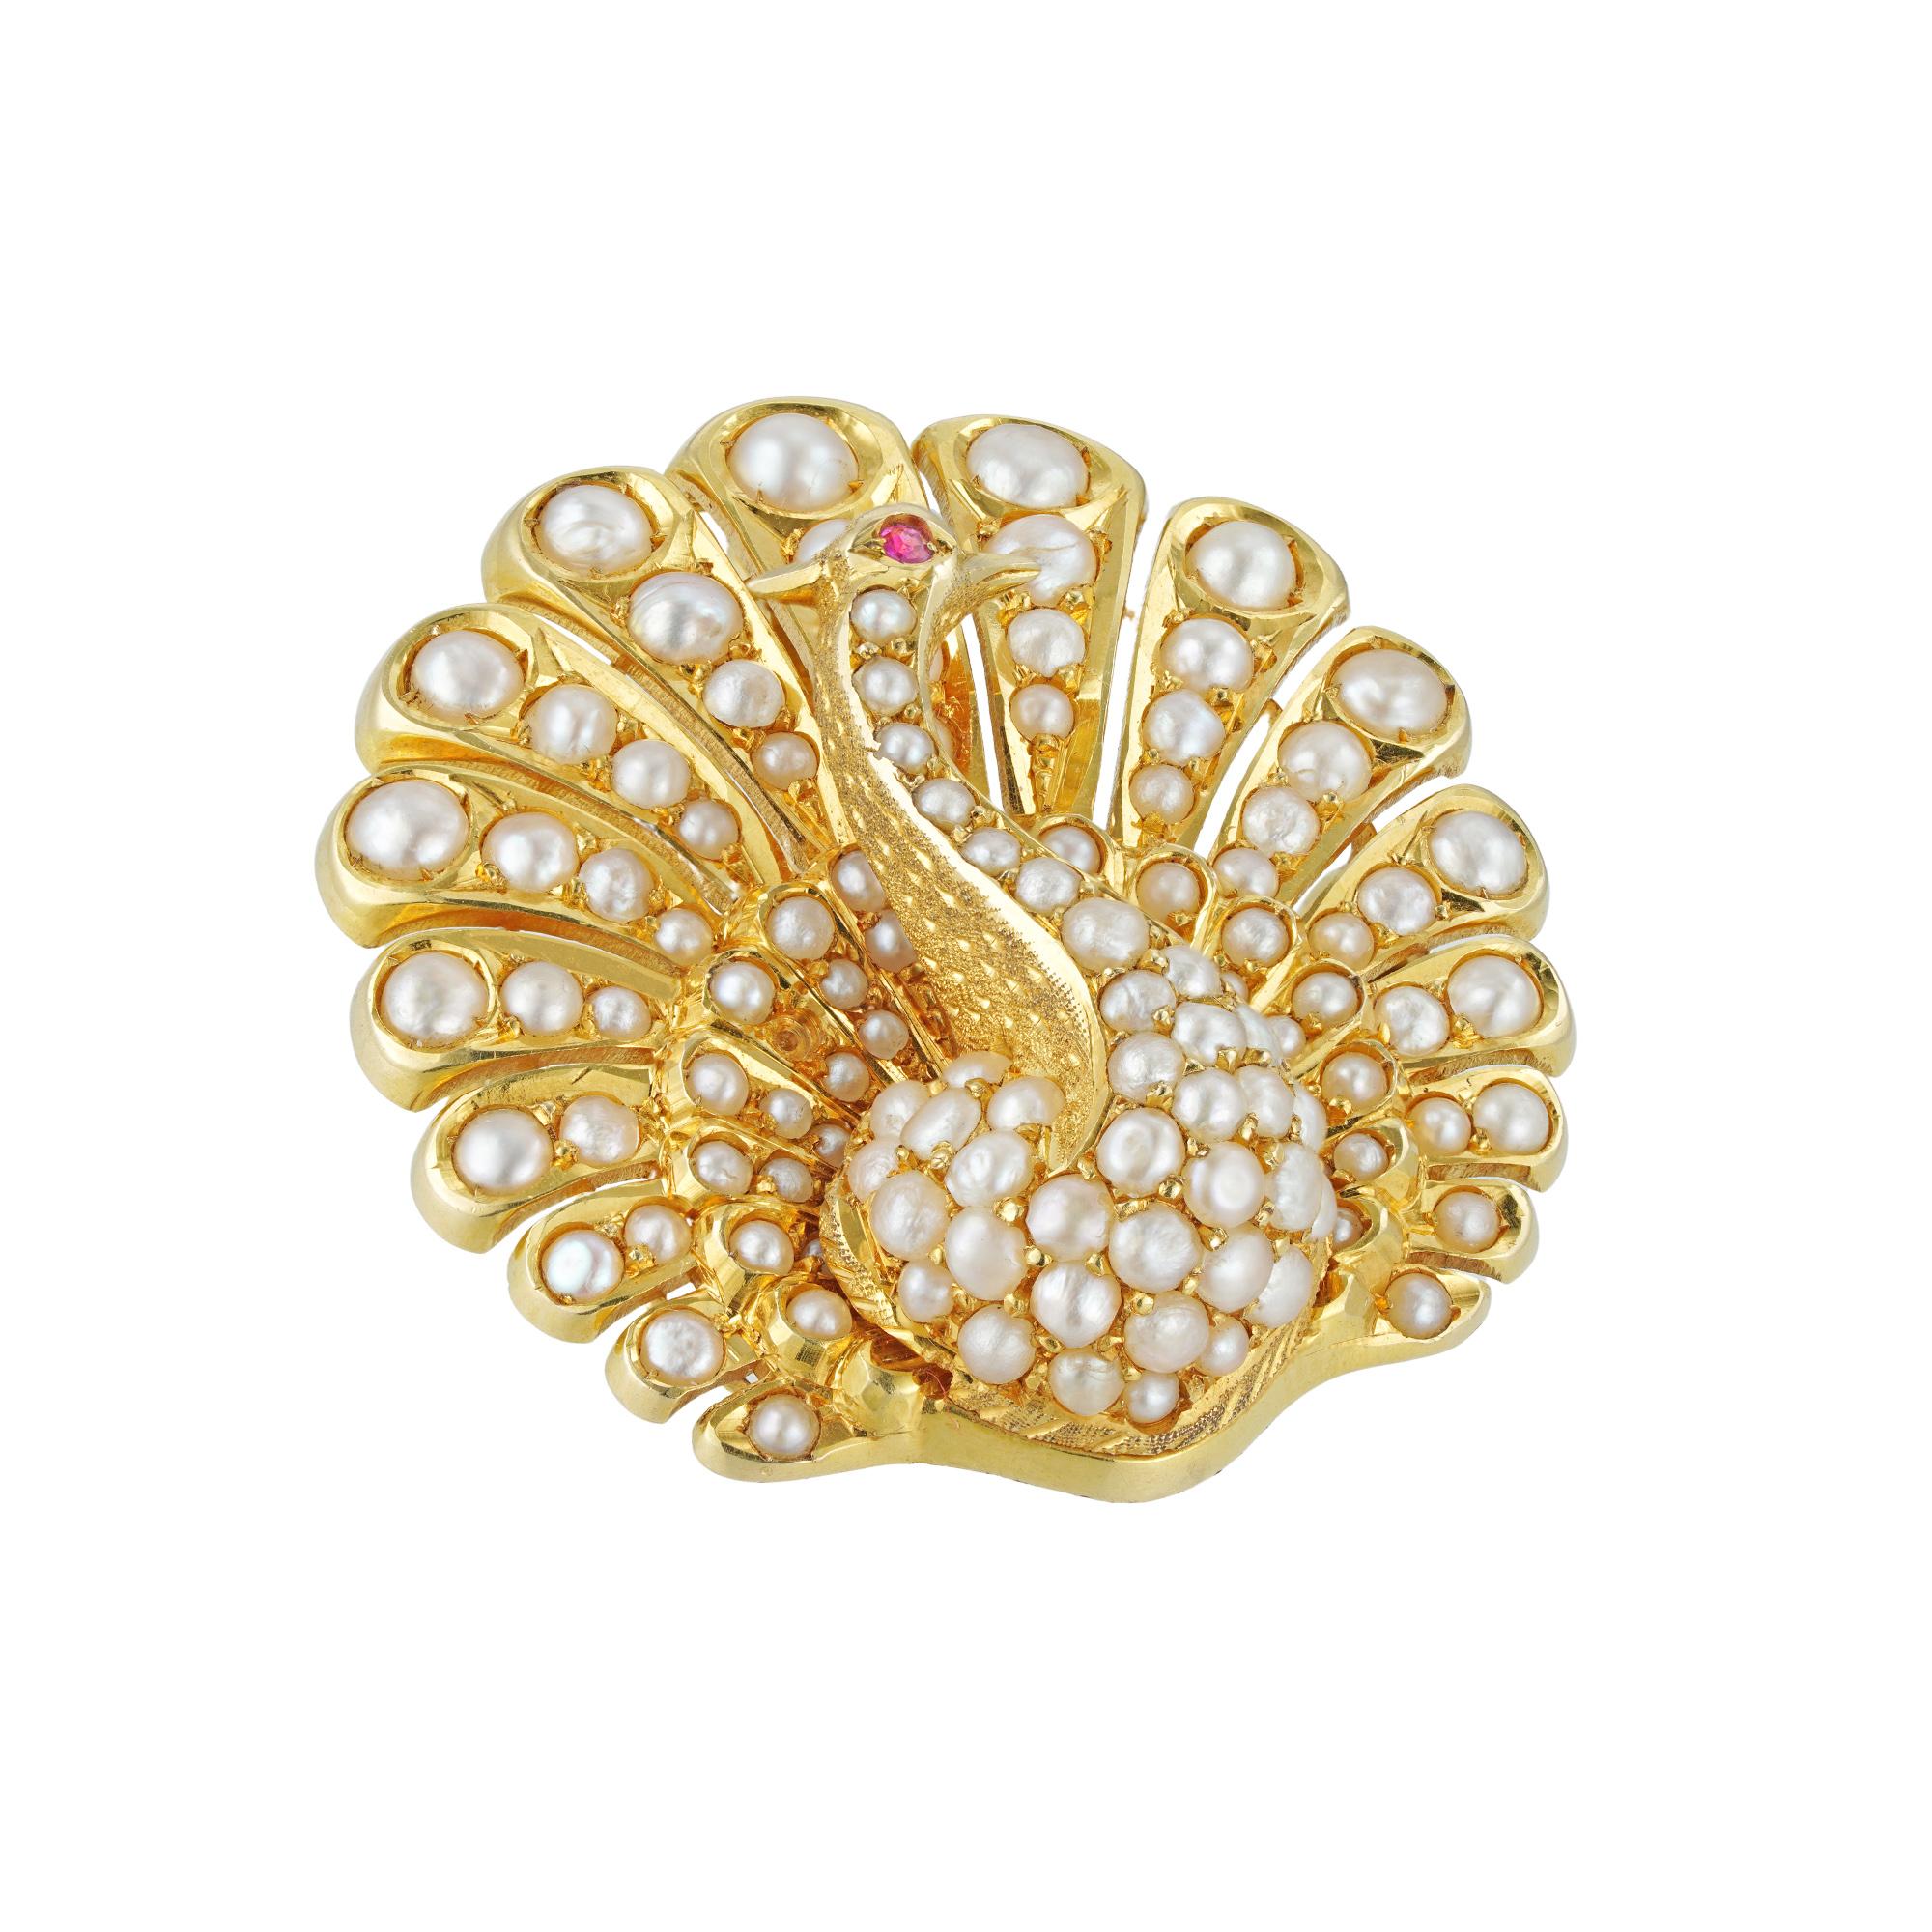 Viktorianische Perlen- und Rubinpfauenbrosche/Anhänger in Form eines Pfaus mit aufgefächertem Schwanz, besetzt mit einhundertachtzehn Perlen und einem rubinbesetzten Auge, alles in 18ct Gold und Silber montiert, mit abnehmbarem Anhängerbügel, um